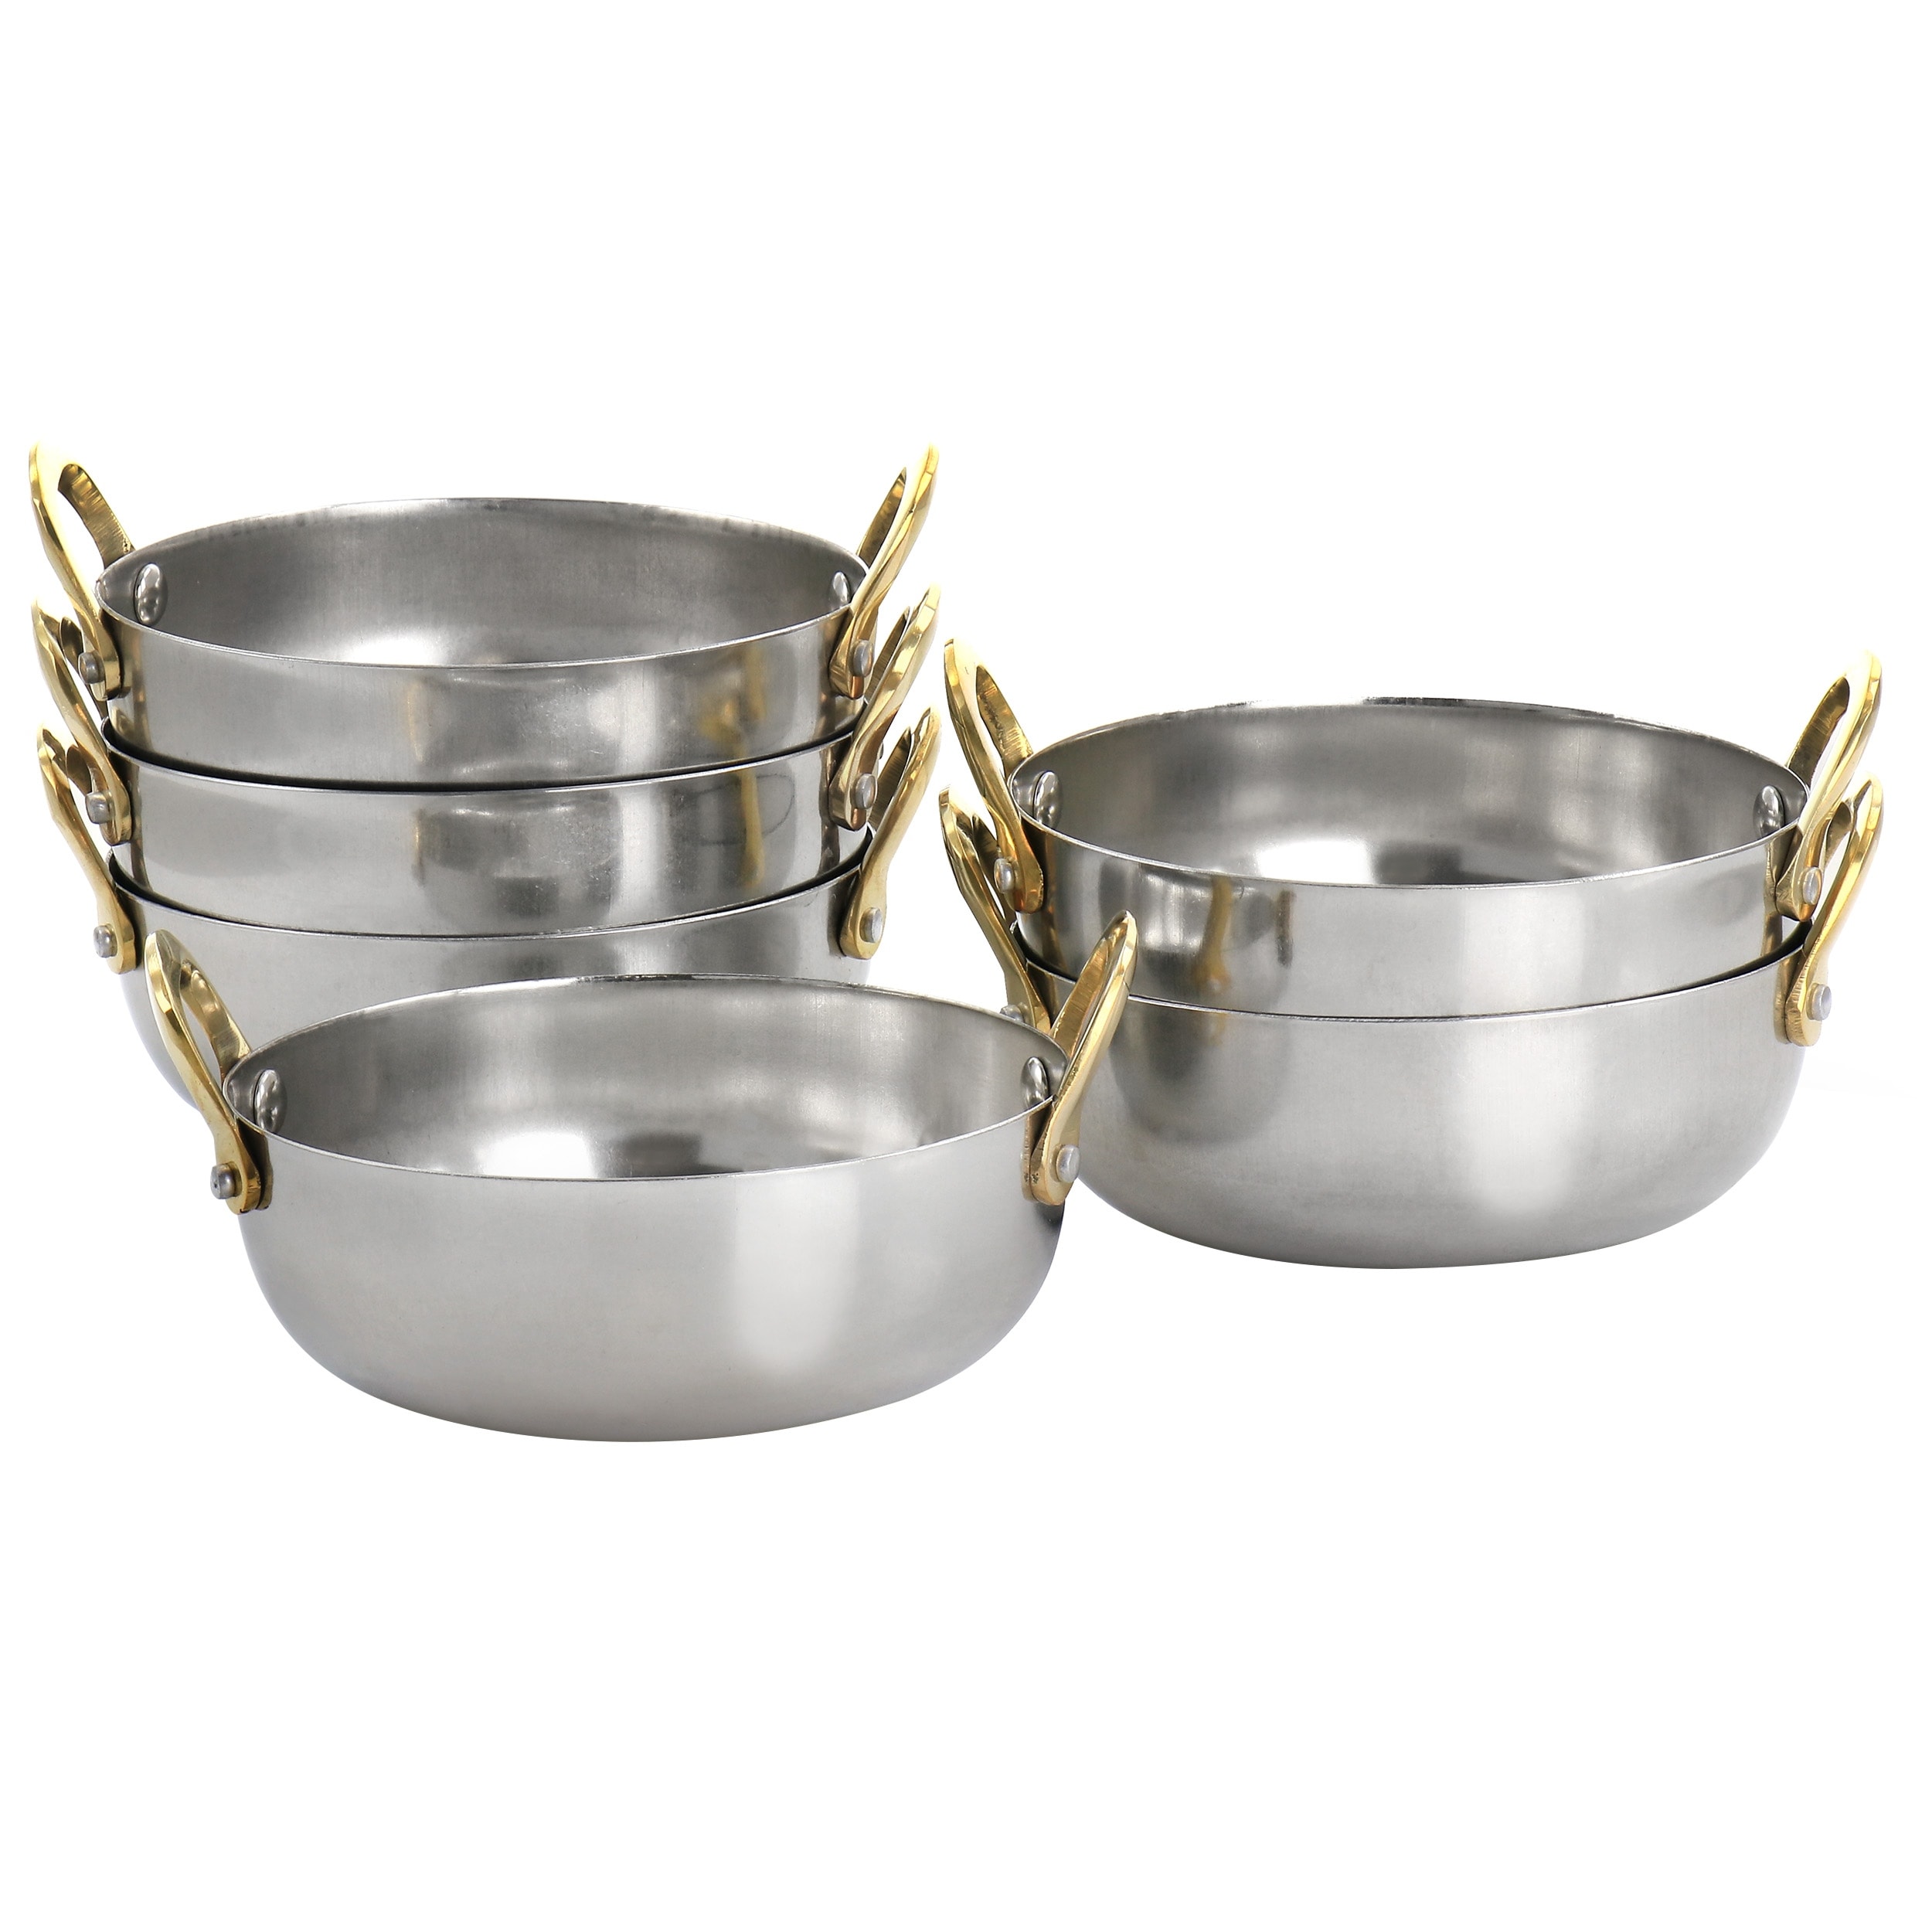 Martha Stewart Vintage 18/8 Tri-ply Stainless Steel 12-Piece Cookware Set  w/ Gold Handles